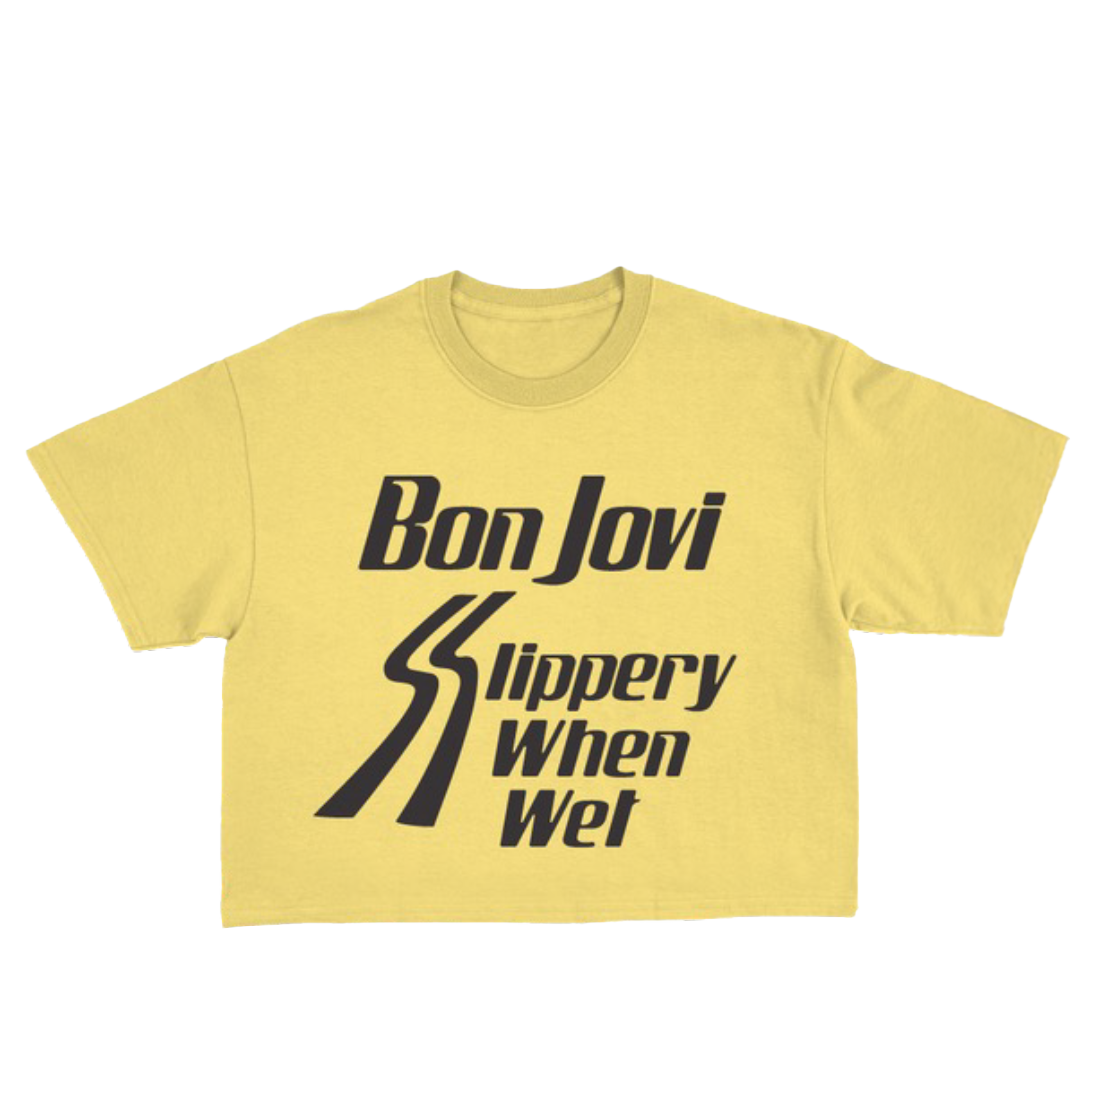 Slippery When Wet Crop T-Shirt